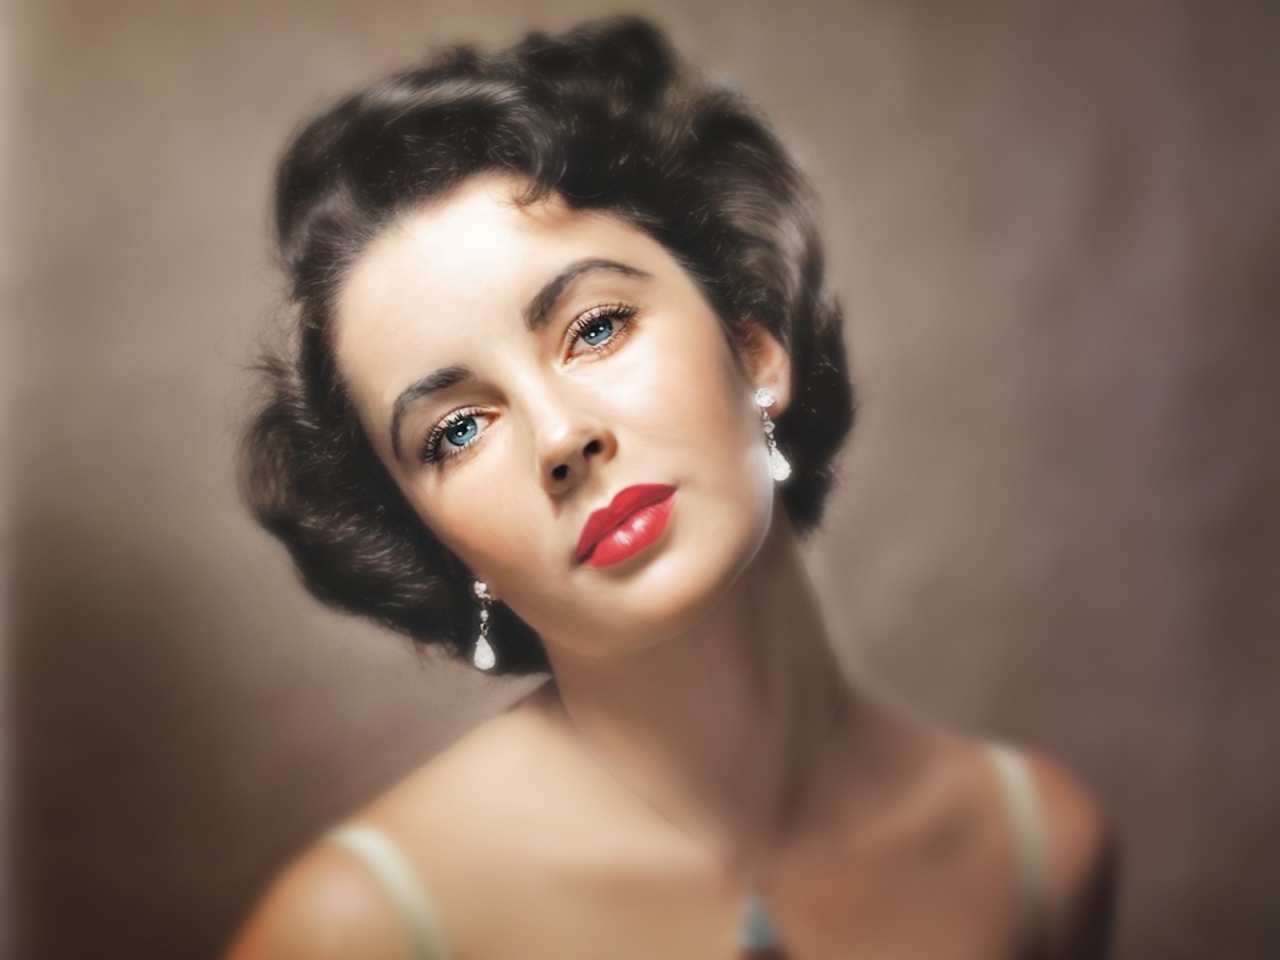 Elizabeth Taylor Blue Eyes for 1280 x 960 resolution